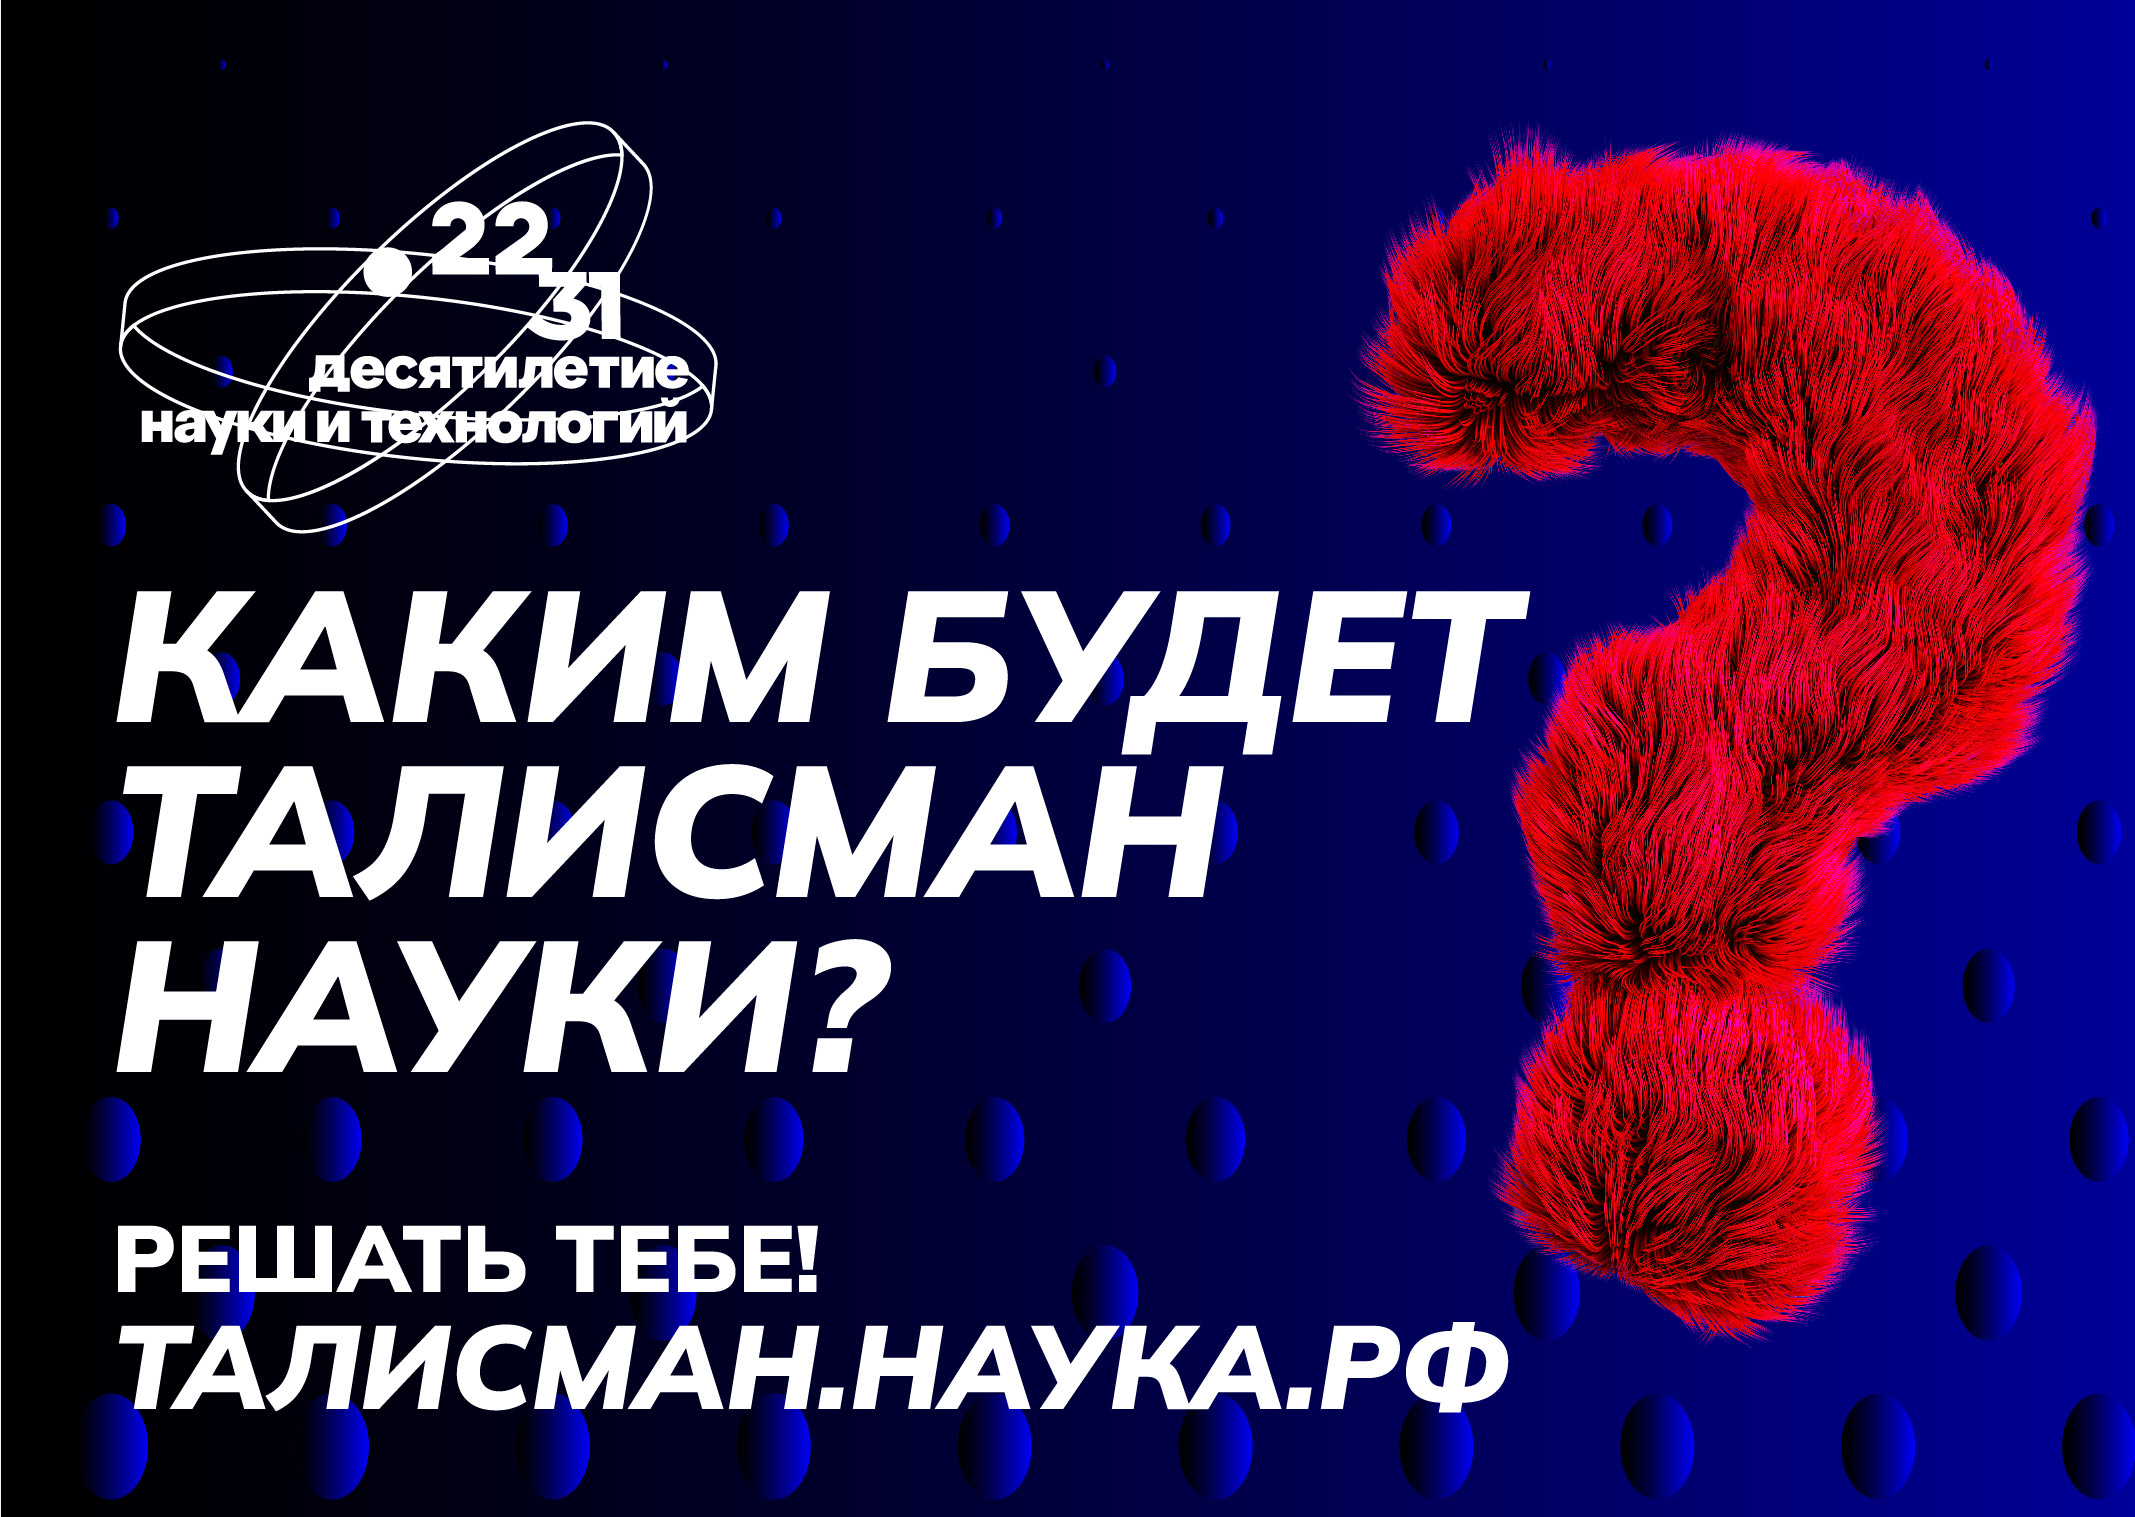 Калужан приглашают принять участие в выборе талисмана Десятилетия науки и технологий.